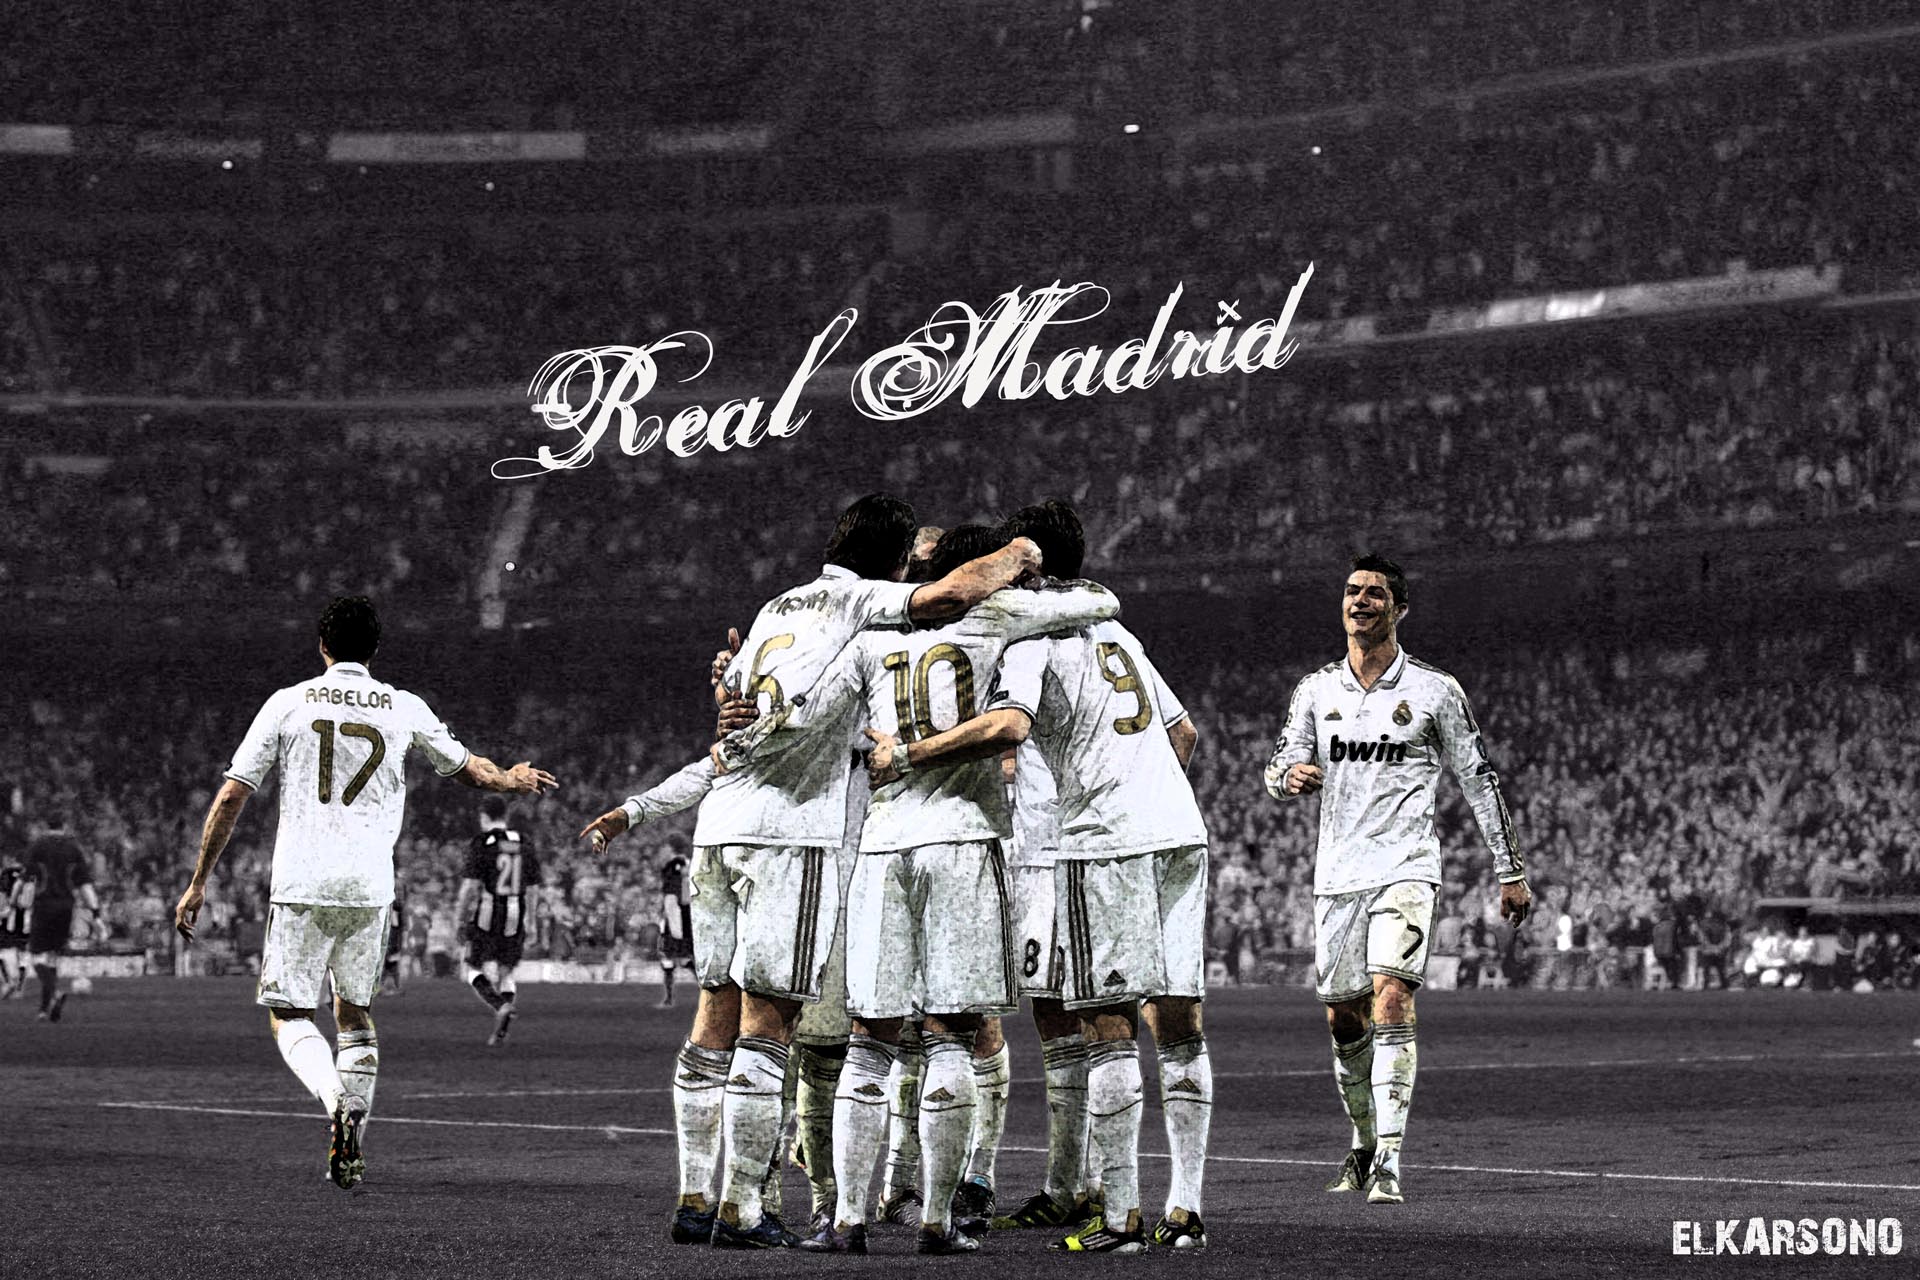 Miễn phí!!! Tải xuống những hình ảnh chụp bắt đầu những khoảnh khắc đẹp nhất của Real Madrid và các cầu thủ tài năng. Sử dụng chúng để trang trí trang web của bạn hoặc chia sẻ với cộng đồng những người yêu bóng đá. Nhấn vào đây để tải xuống miễn phí.